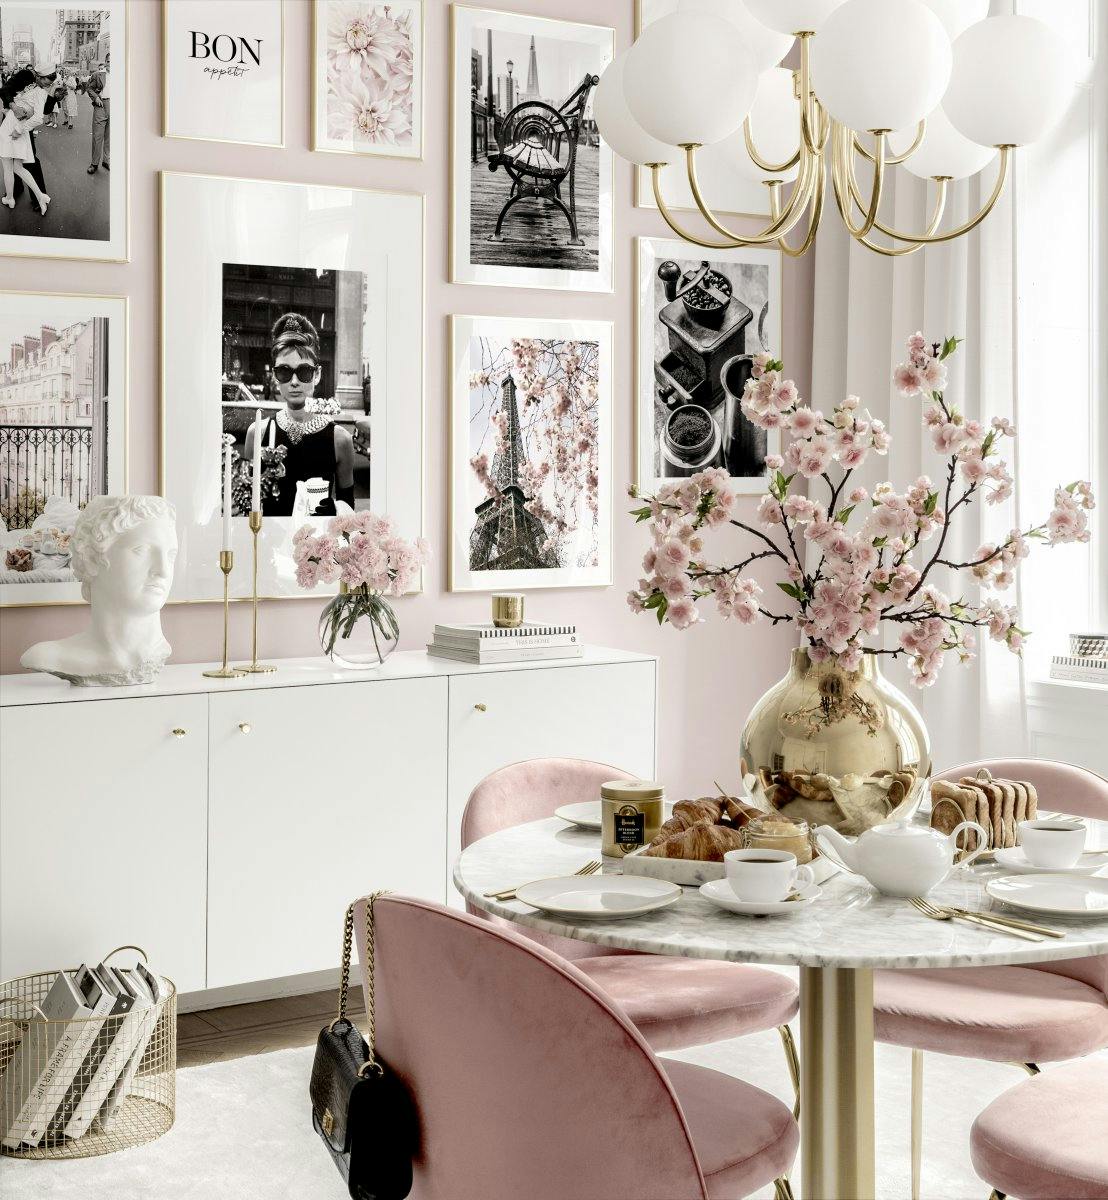 Paryska galeria obrazow plakaty z wizerunkami ikon rozowa jadalnia zlote ramki